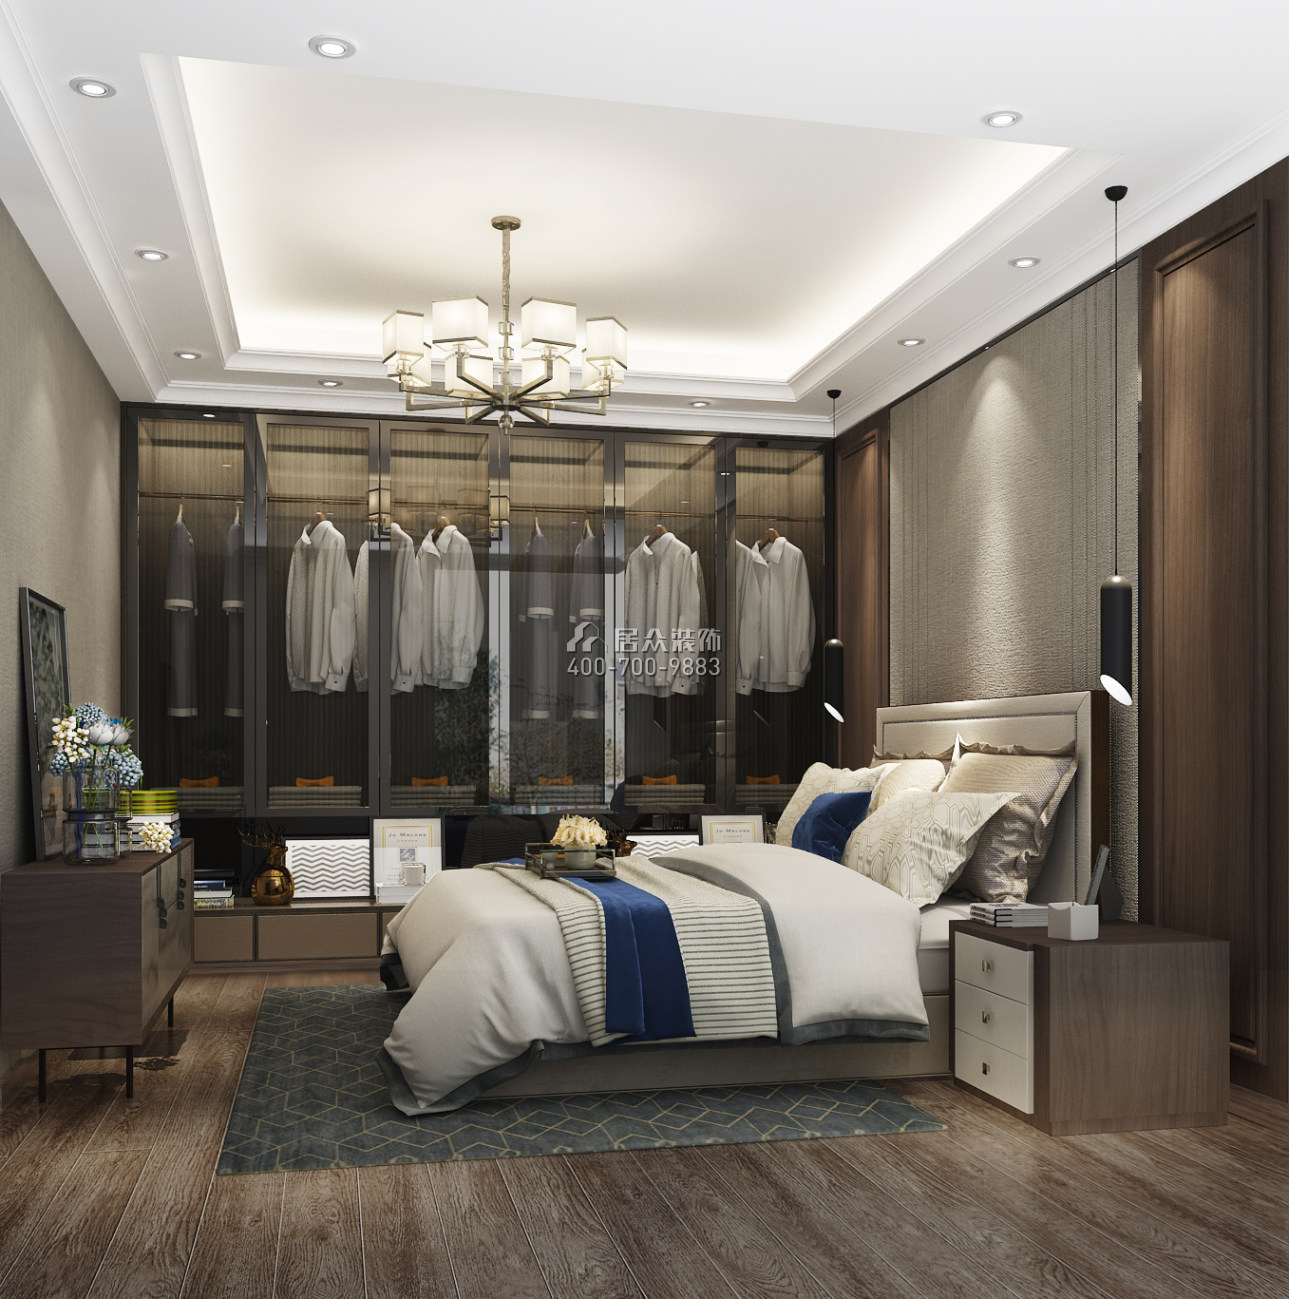 郁金香家园150平方米现代简约风格平层户型卧室开元官网效果图